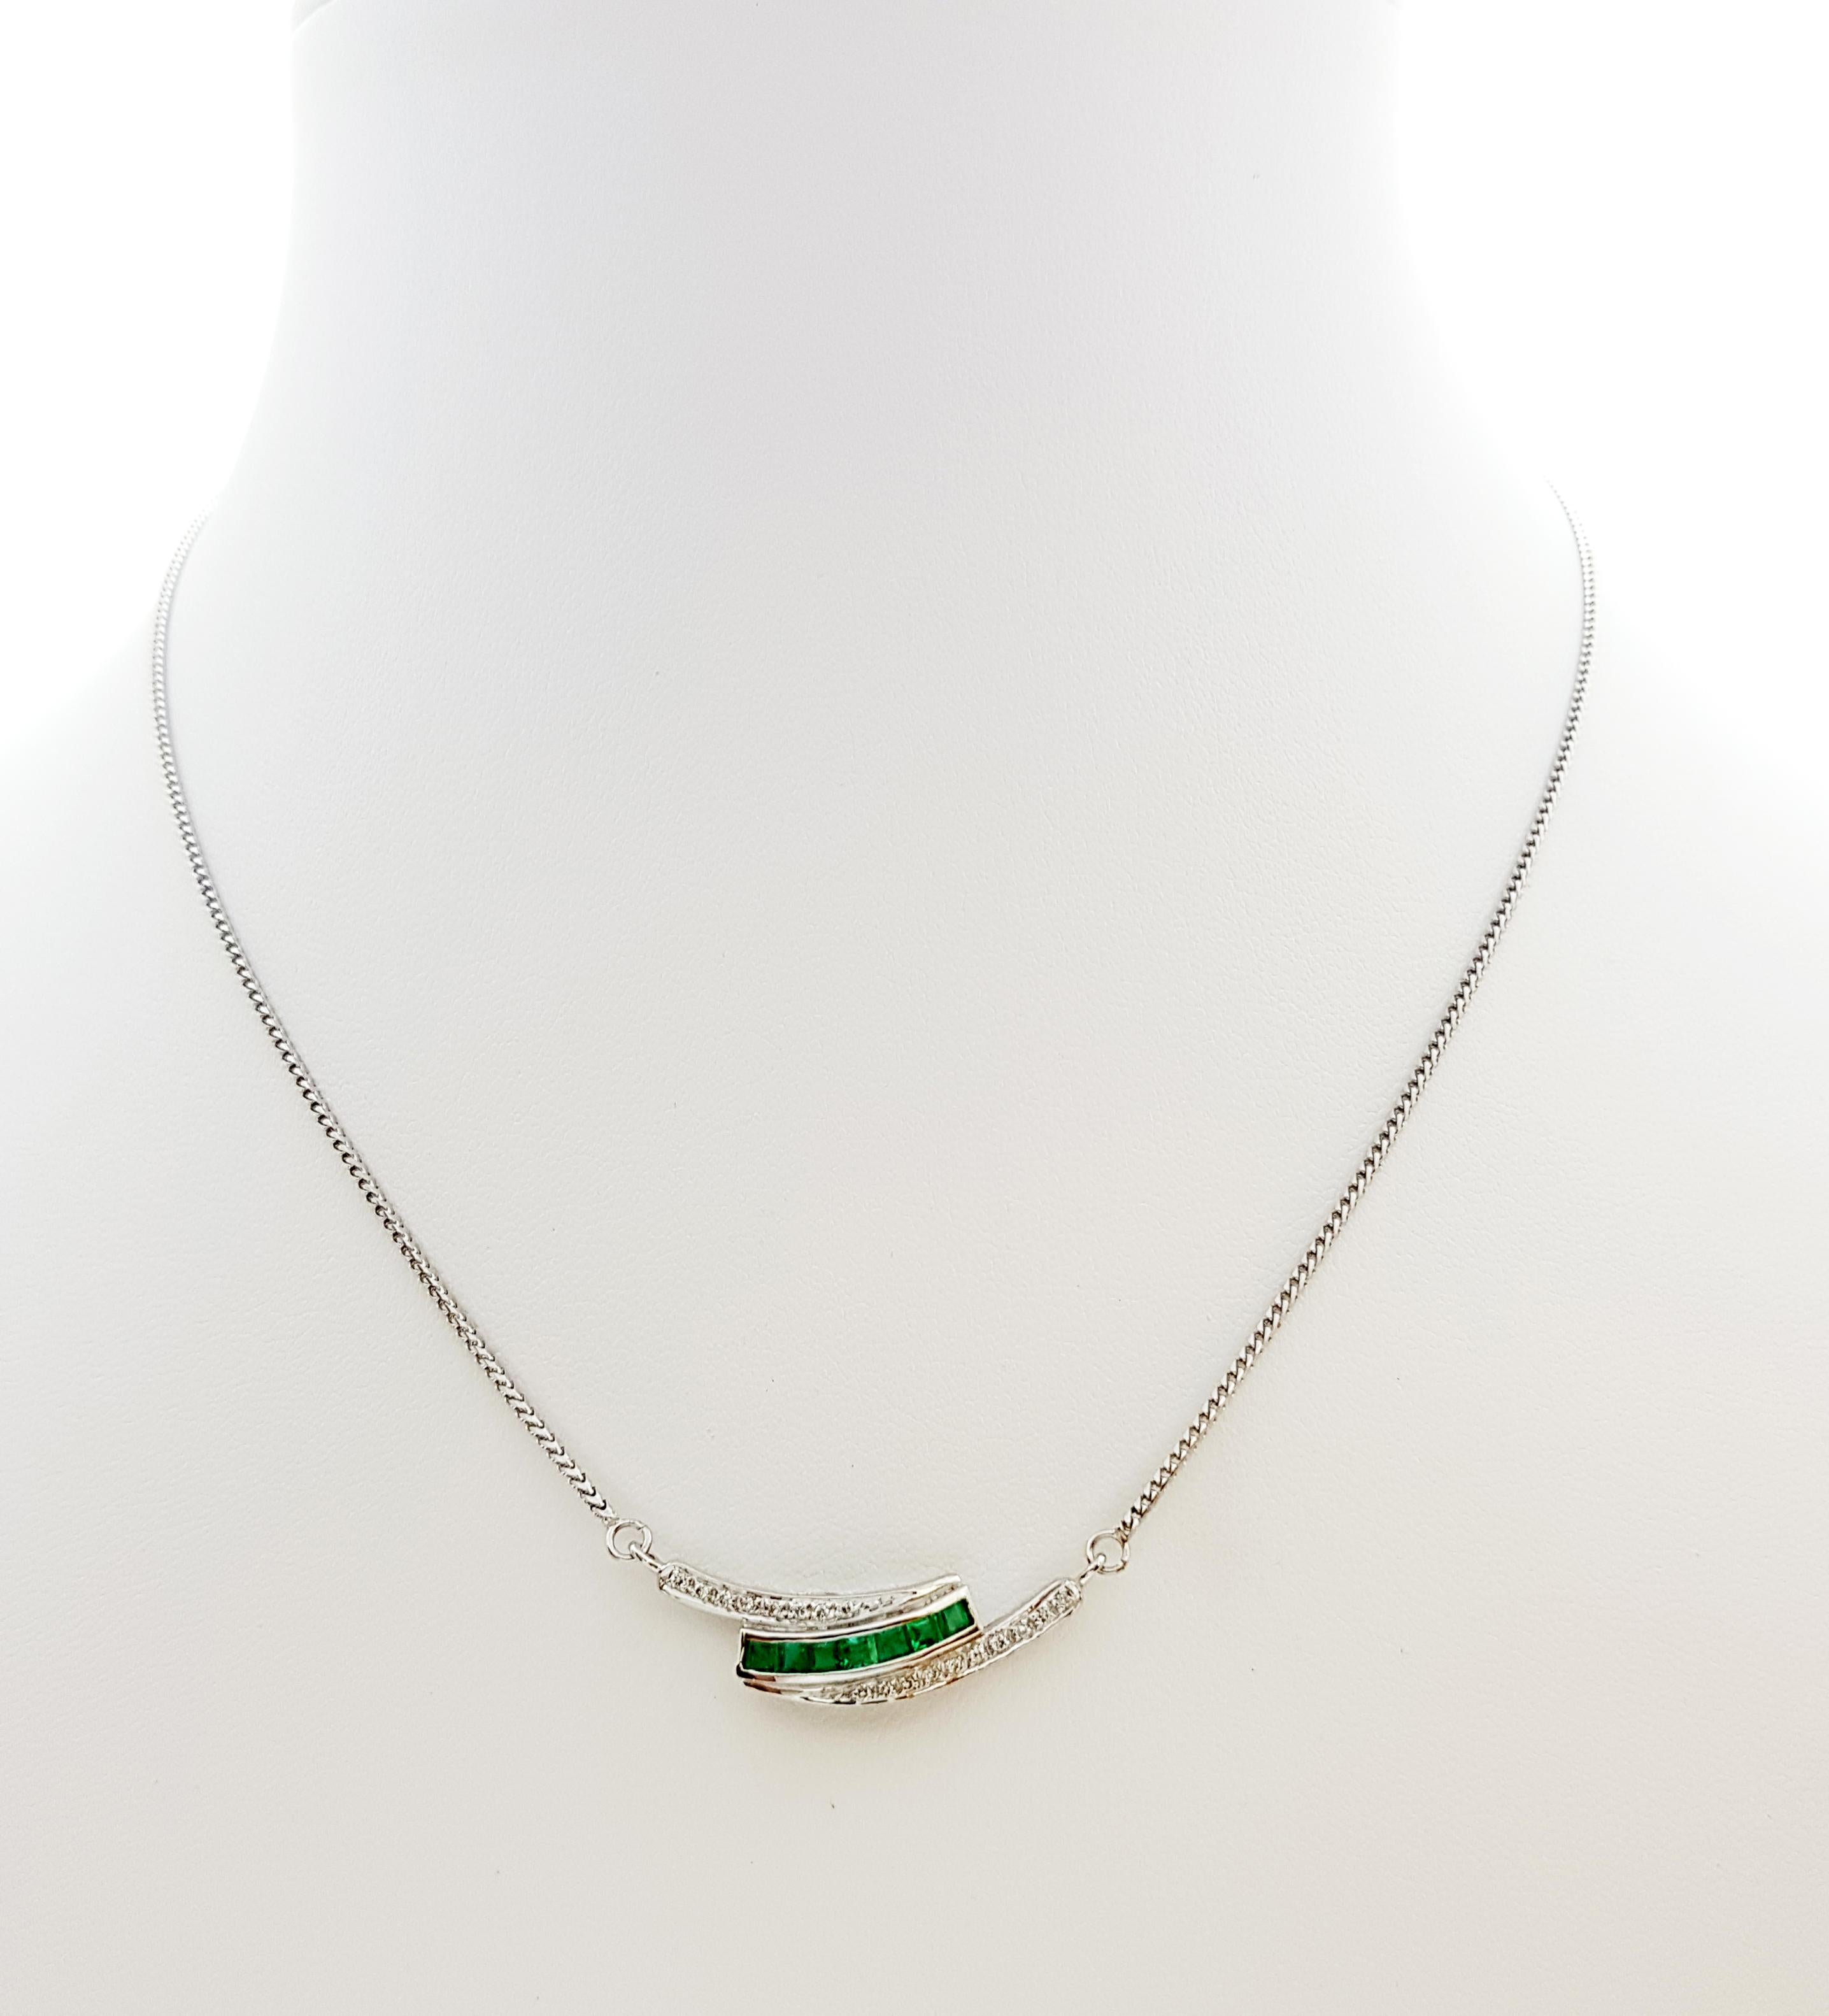 Smaragd 0,45 Karat mit Diamant 0,10 Karat Halskette in 18 Karat Weißgold gefasst

Breite: 0,7 cm 
Länge: 45,0 cm
Gesamtgewicht: 7,84 Gramm

